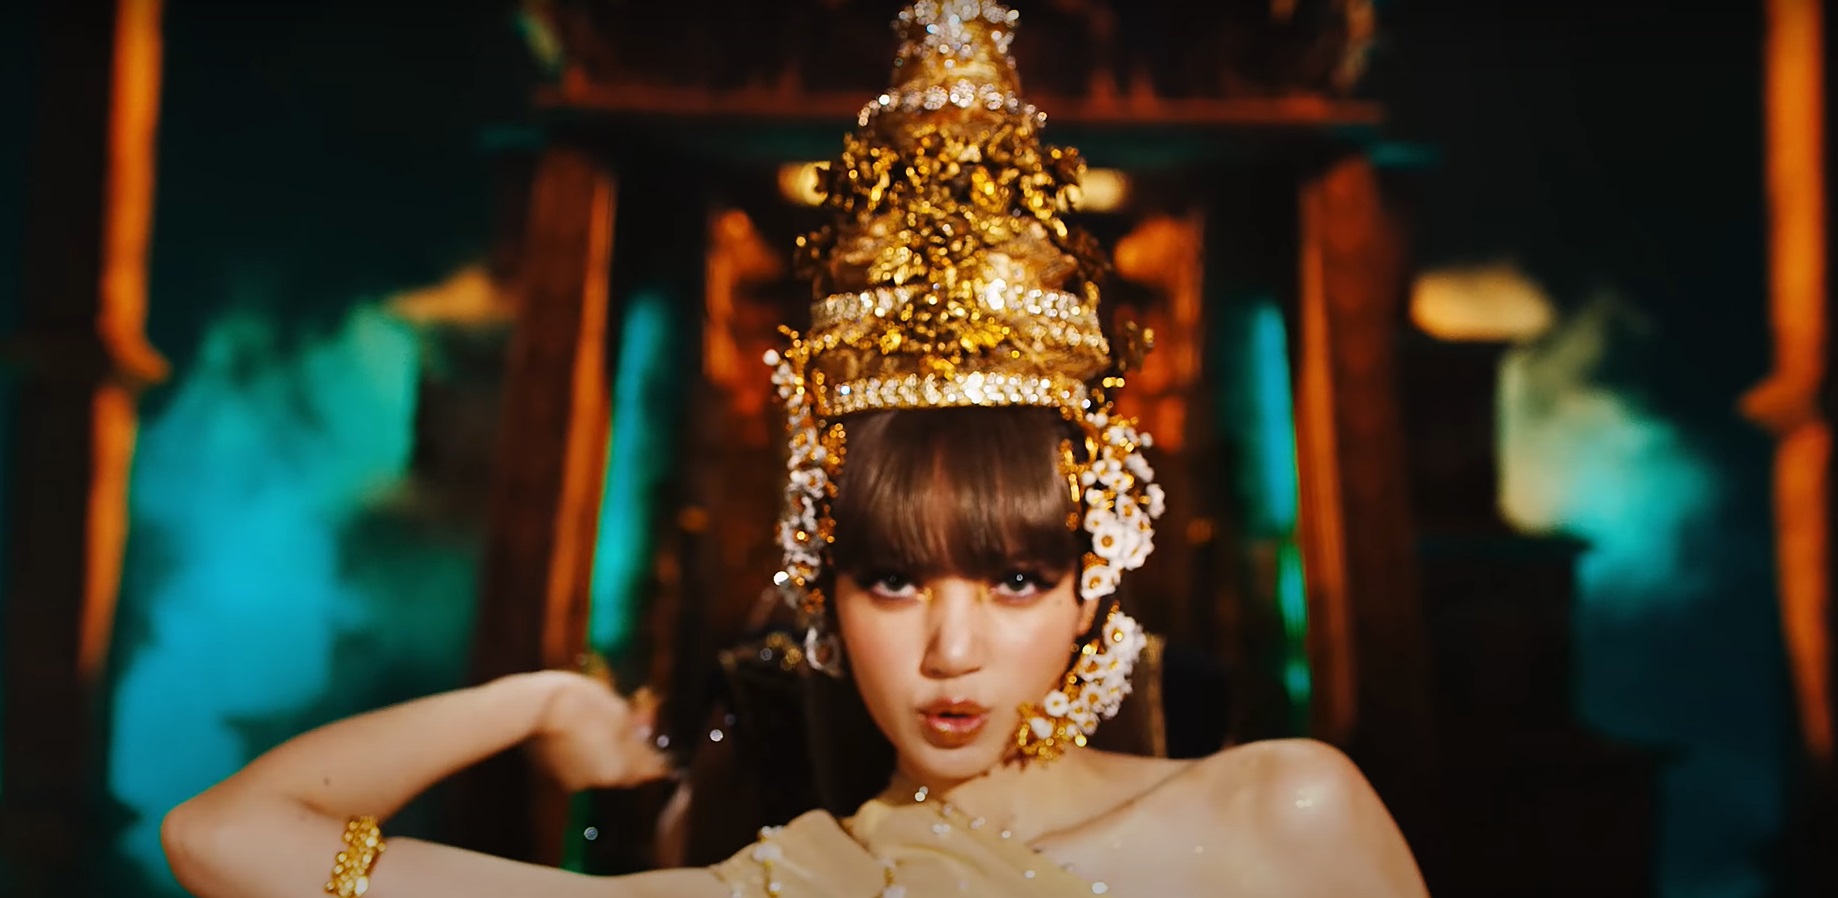 วธ.ชื่นชม 'ลิซ่า BLACKPINK-ผู้ออกแบบ' นำวัฒนธรรมไทยเผยแพร่สู่ระดับโลก